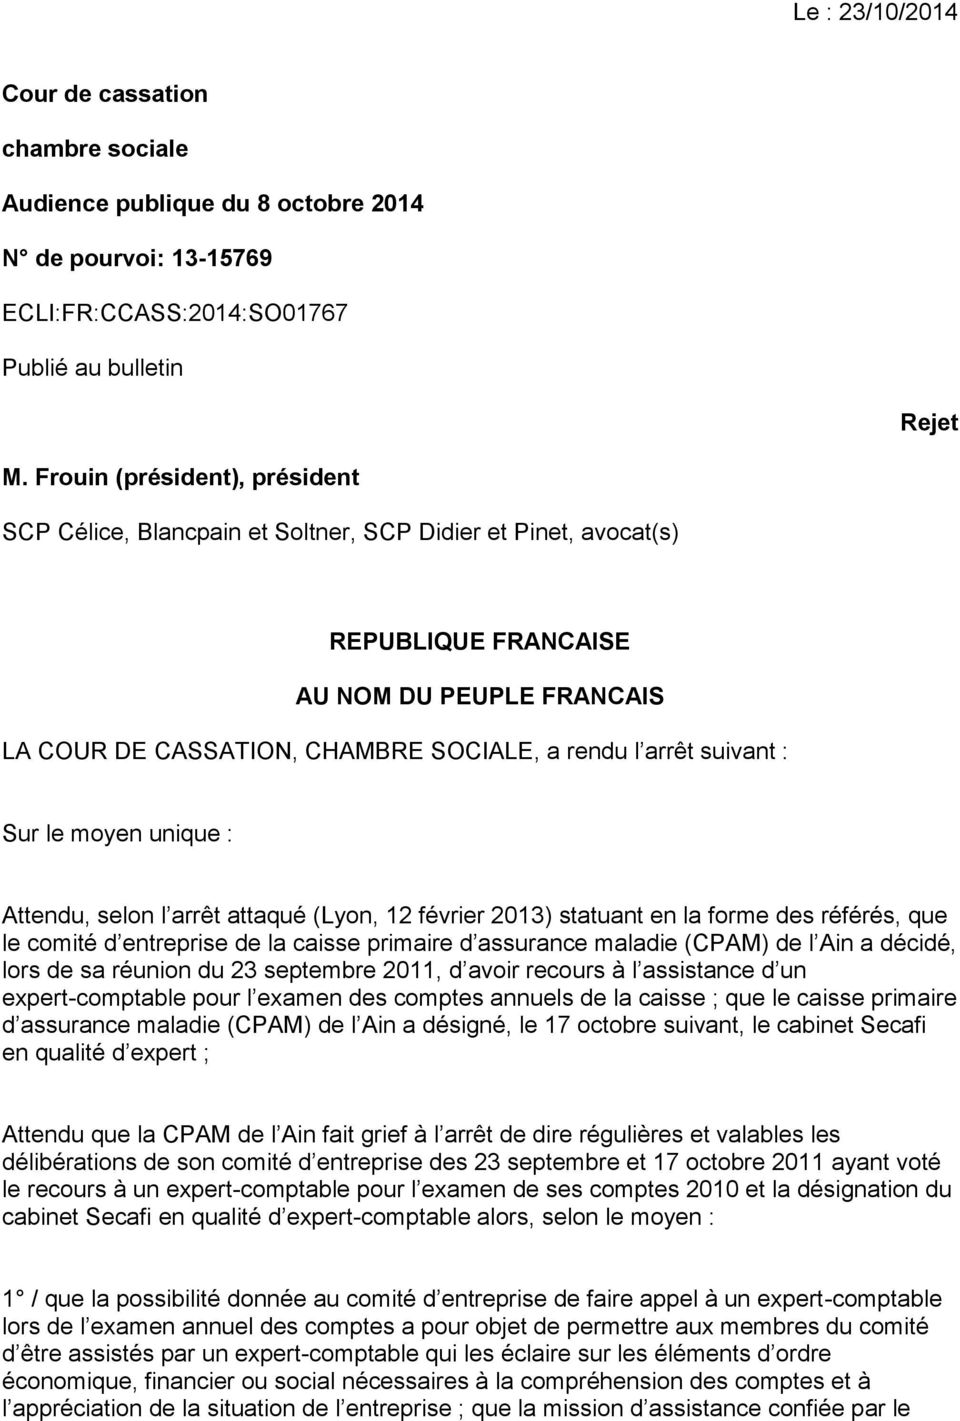 suivant : Sur le moyen unique : Attendu, selon l arrêt attaqué (Lyon, 12 février 2013) statuant en la forme des référés, que le comité d entreprise de la caisse primaire d assurance maladie (CPAM) de